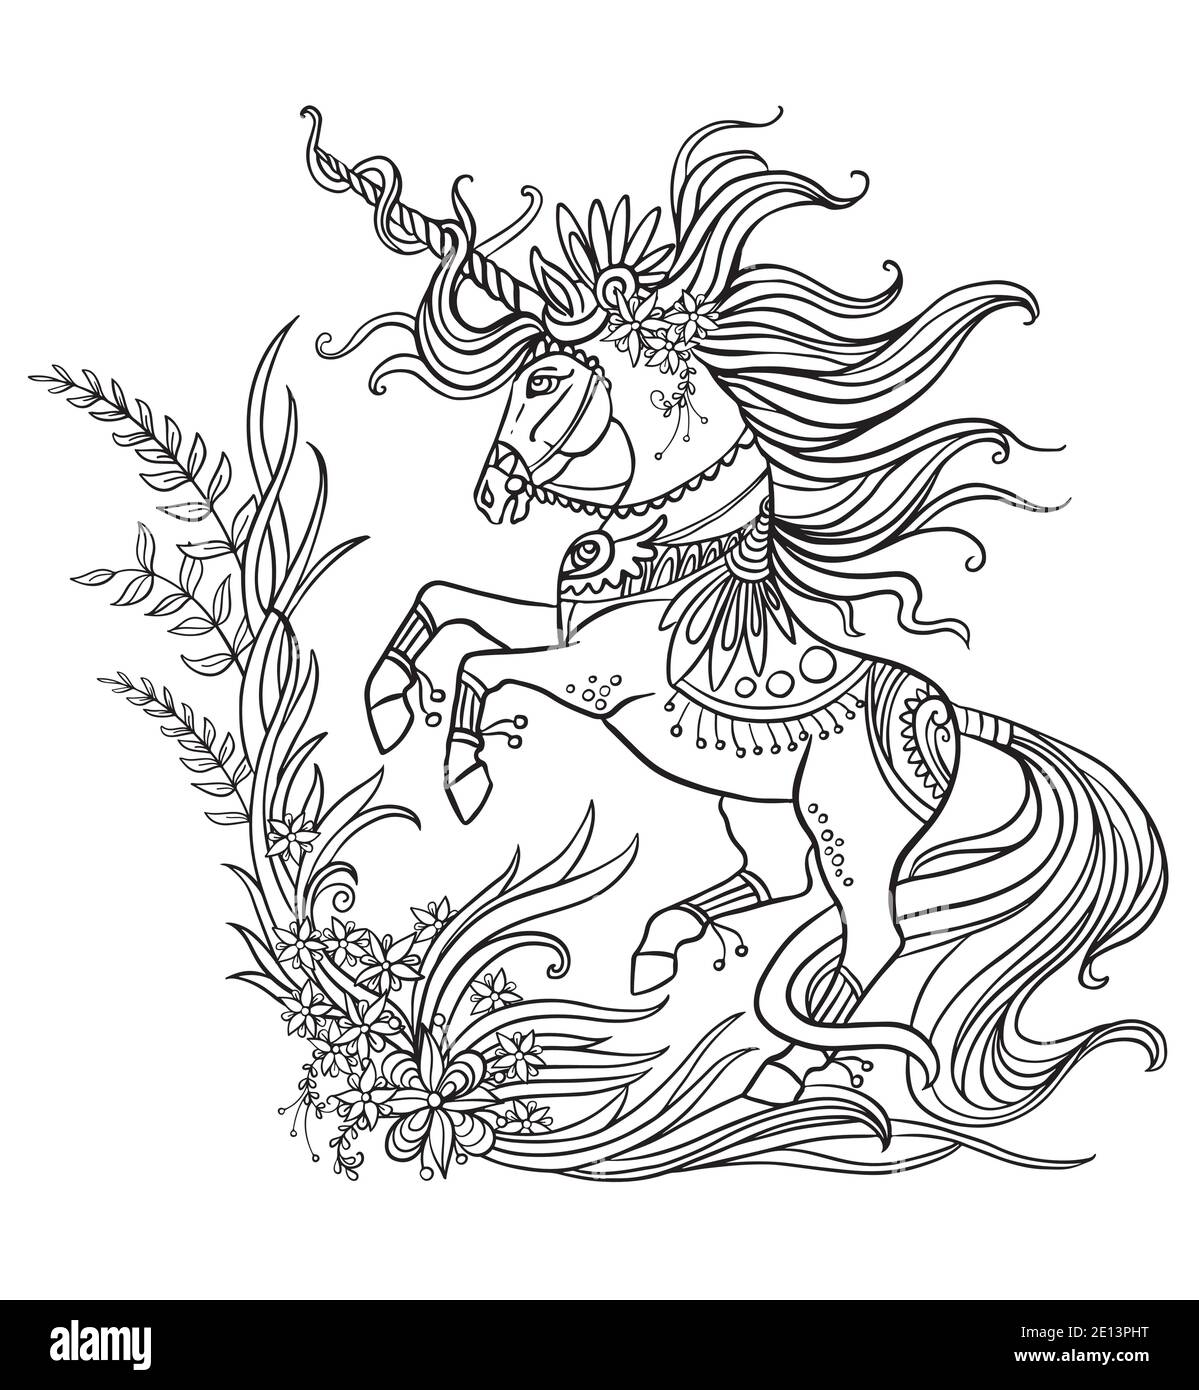 Dessin d'une licorne isolée avec un long style de nœud de manie pour adultes coloriage livre, tatouage, t-shirt design, logo, signe. Illustration stylisée du cheval unico Illustration de Vecteur